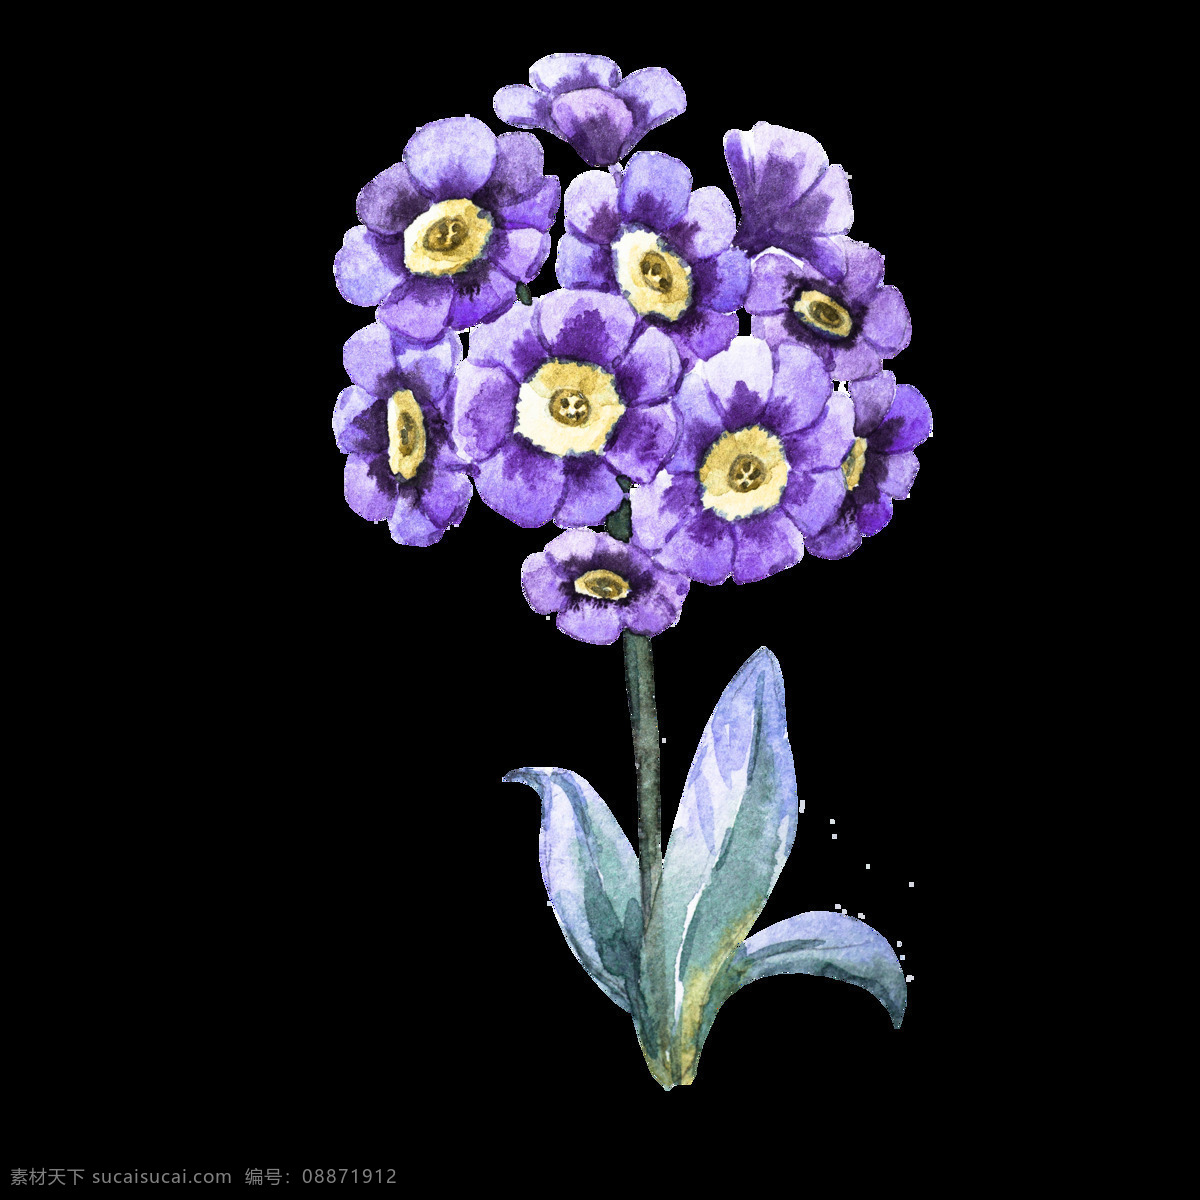 紫色 花卉 卡通 透明 抠图专用 装饰 设计素材